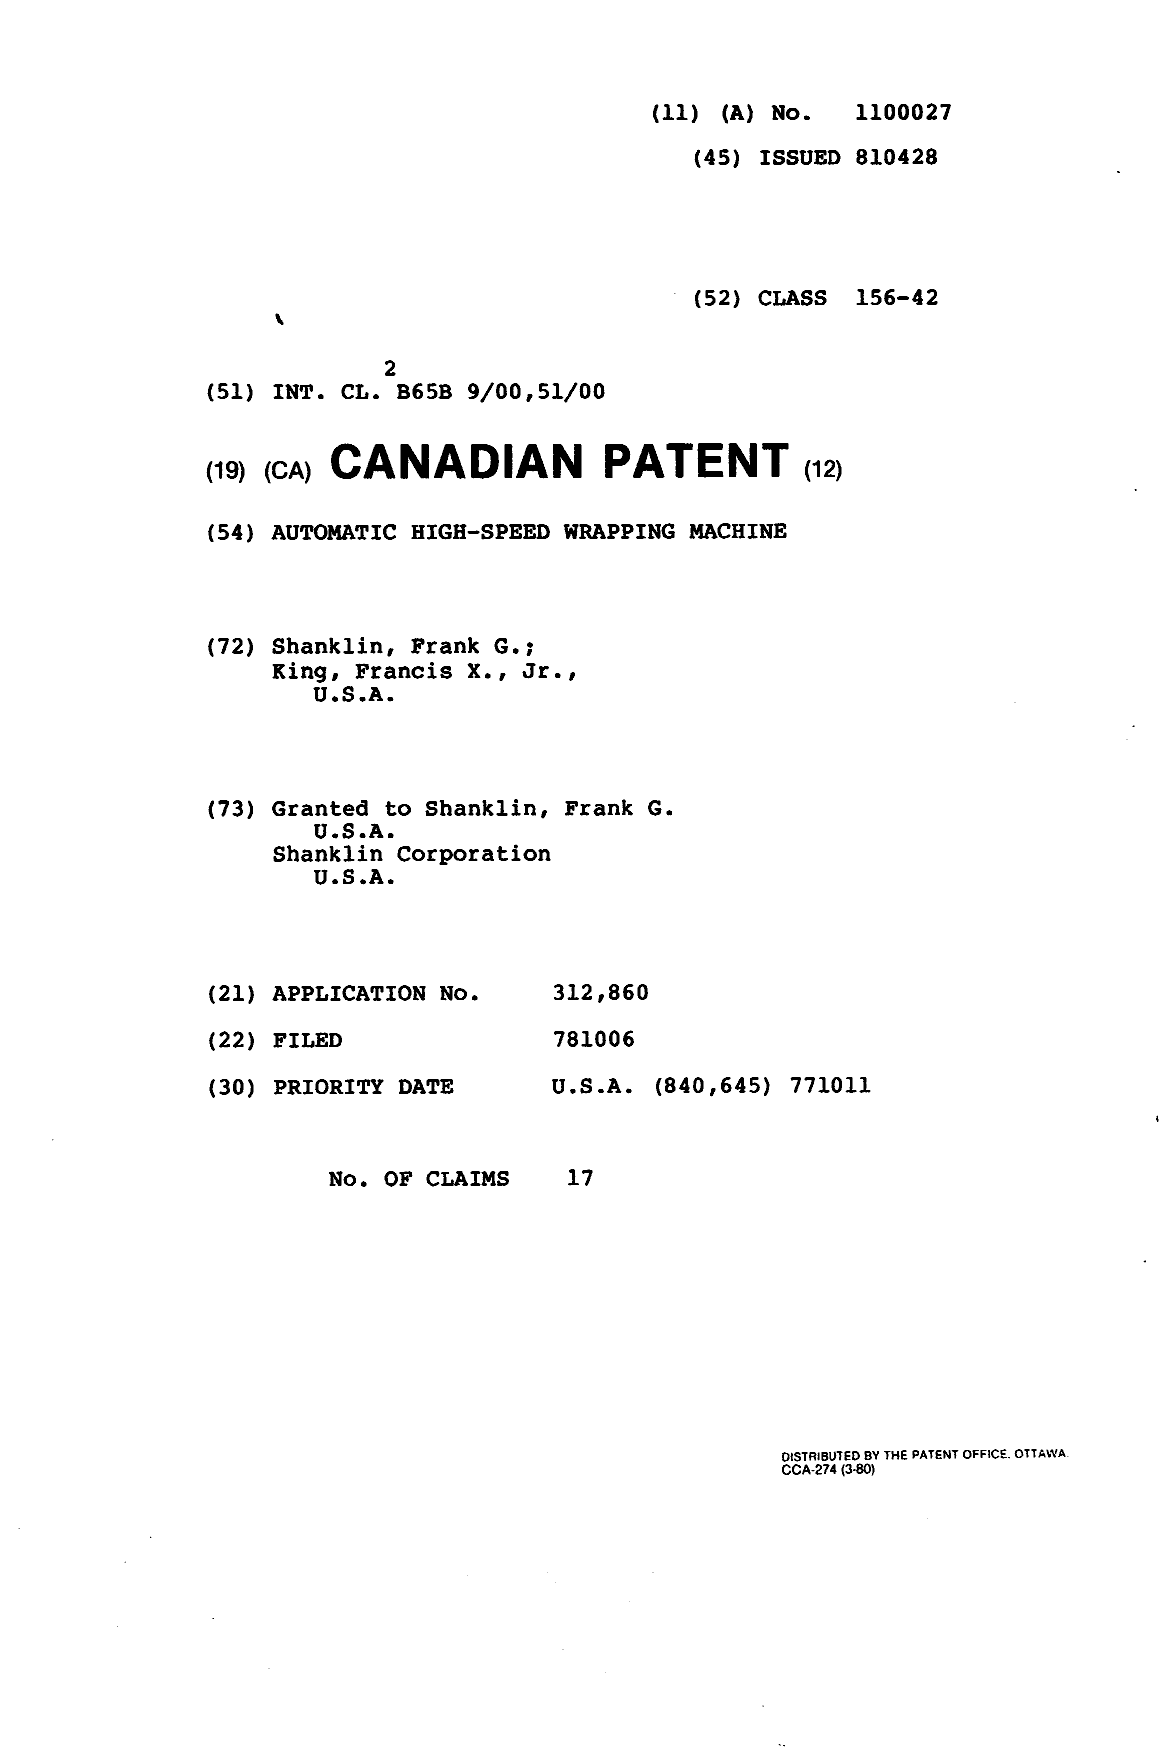 Document de brevet canadien 1100027. Page couverture 19940314. Image 1 de 1